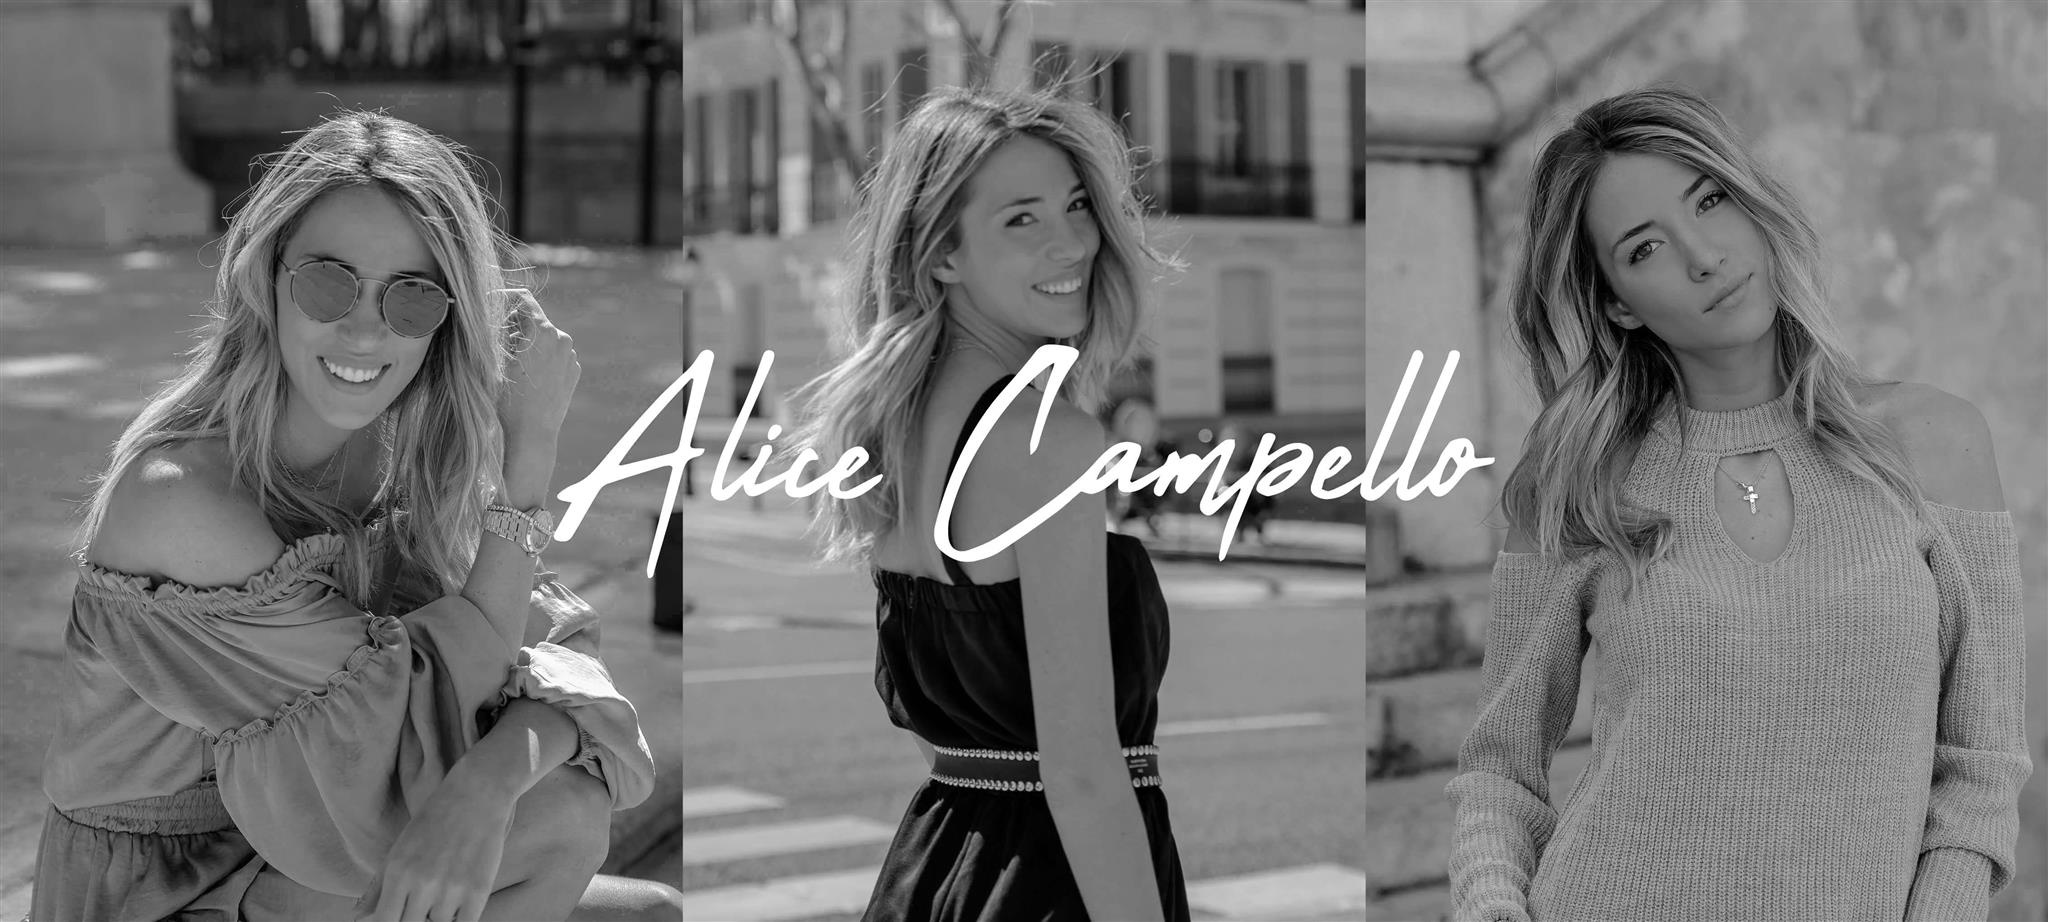 Alice Campello - Stay tuned